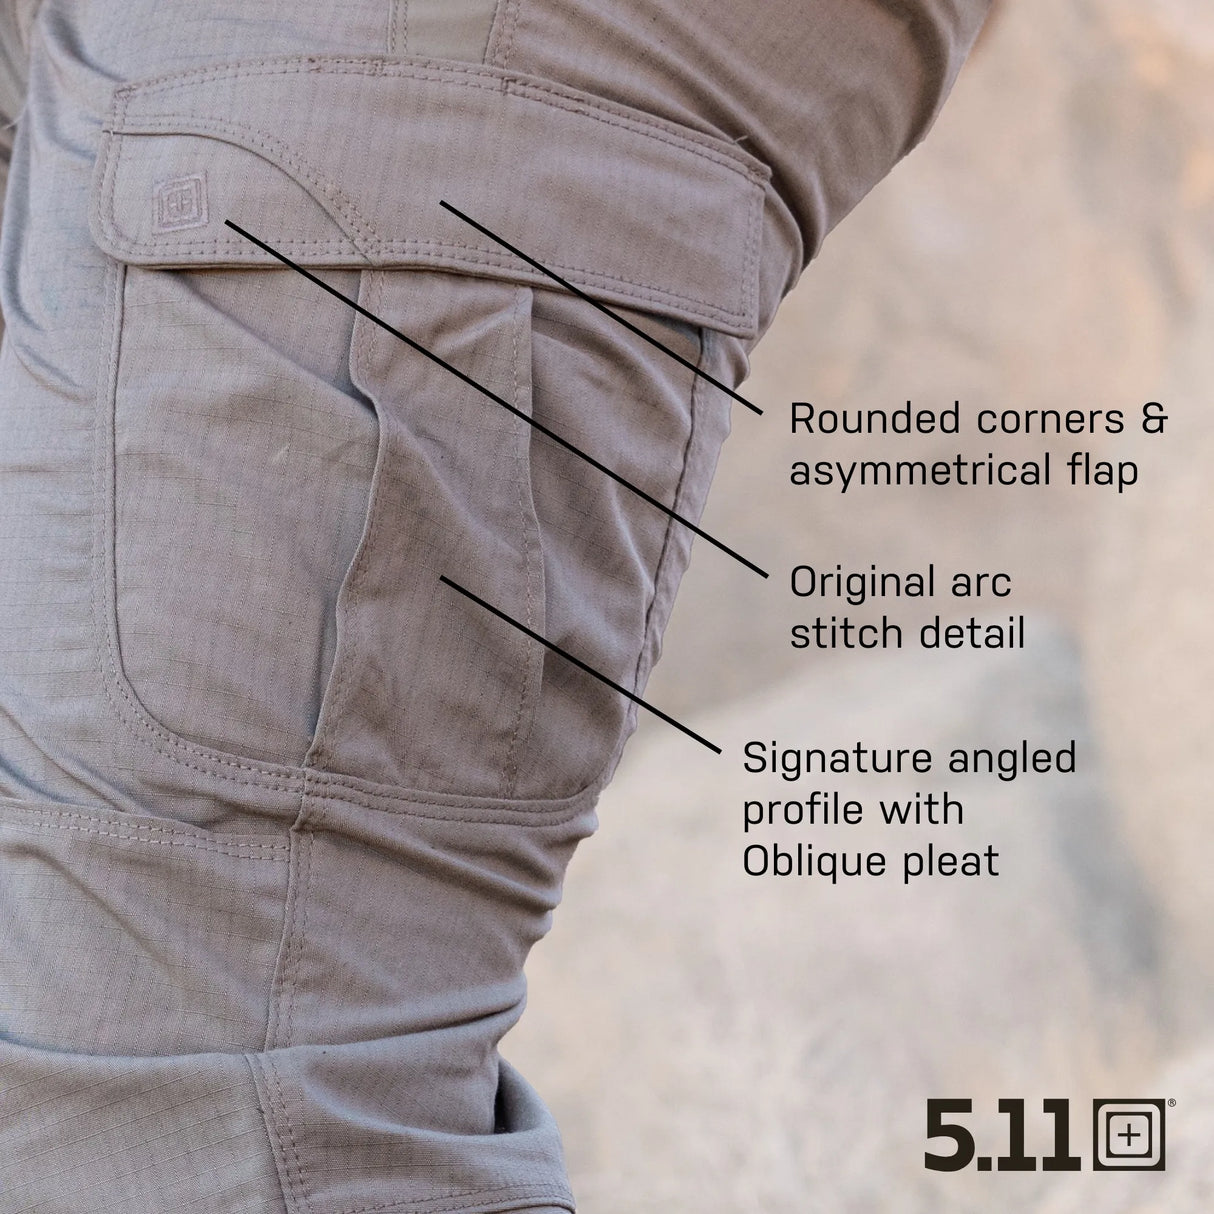 5.11 Tactical Pants- The Original Tactical Cargo Pant